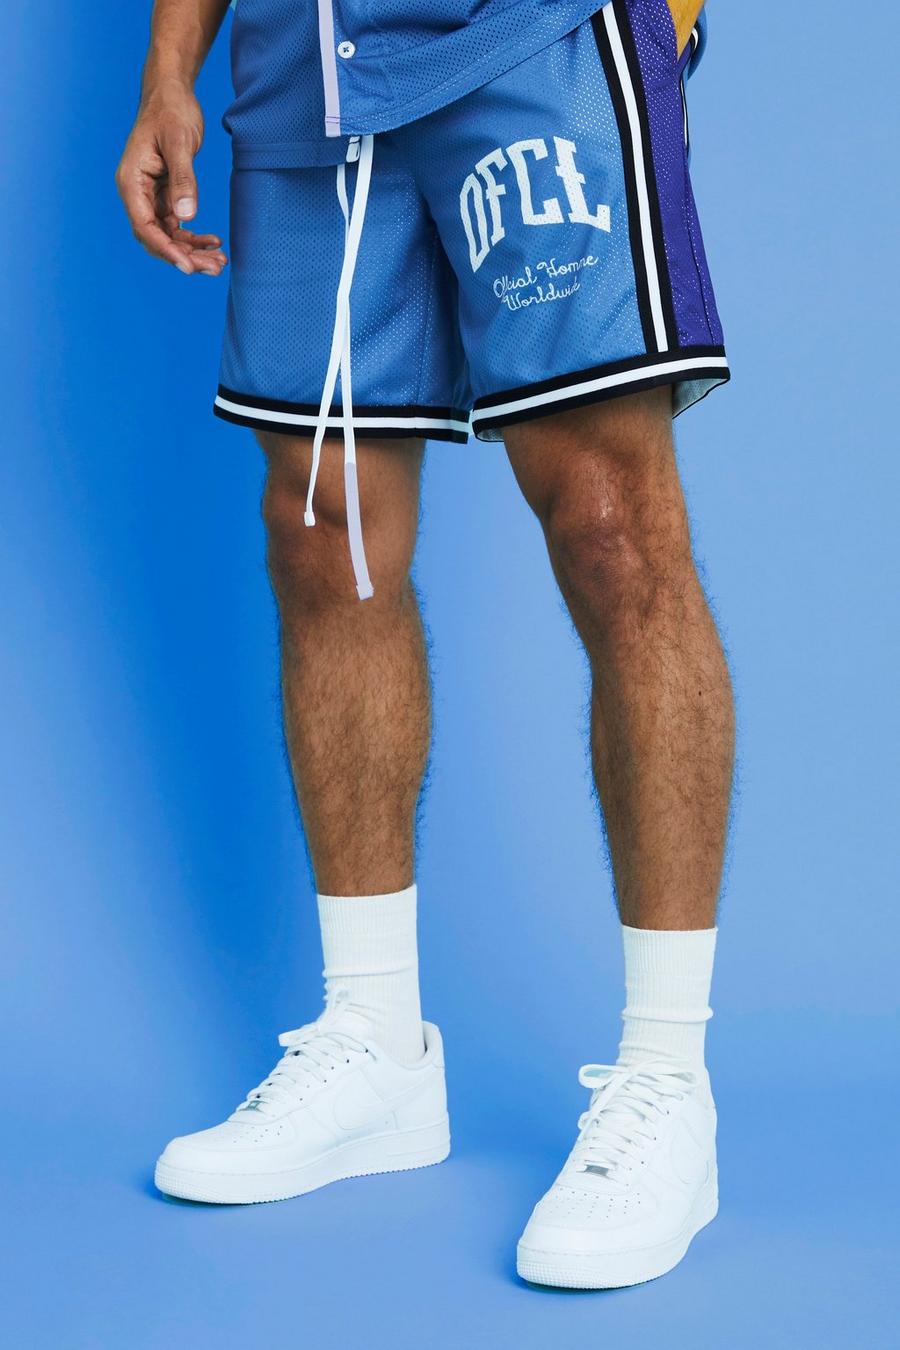 Pantalón corto Ofcl de malla estilo baloncesto, Light blue azul